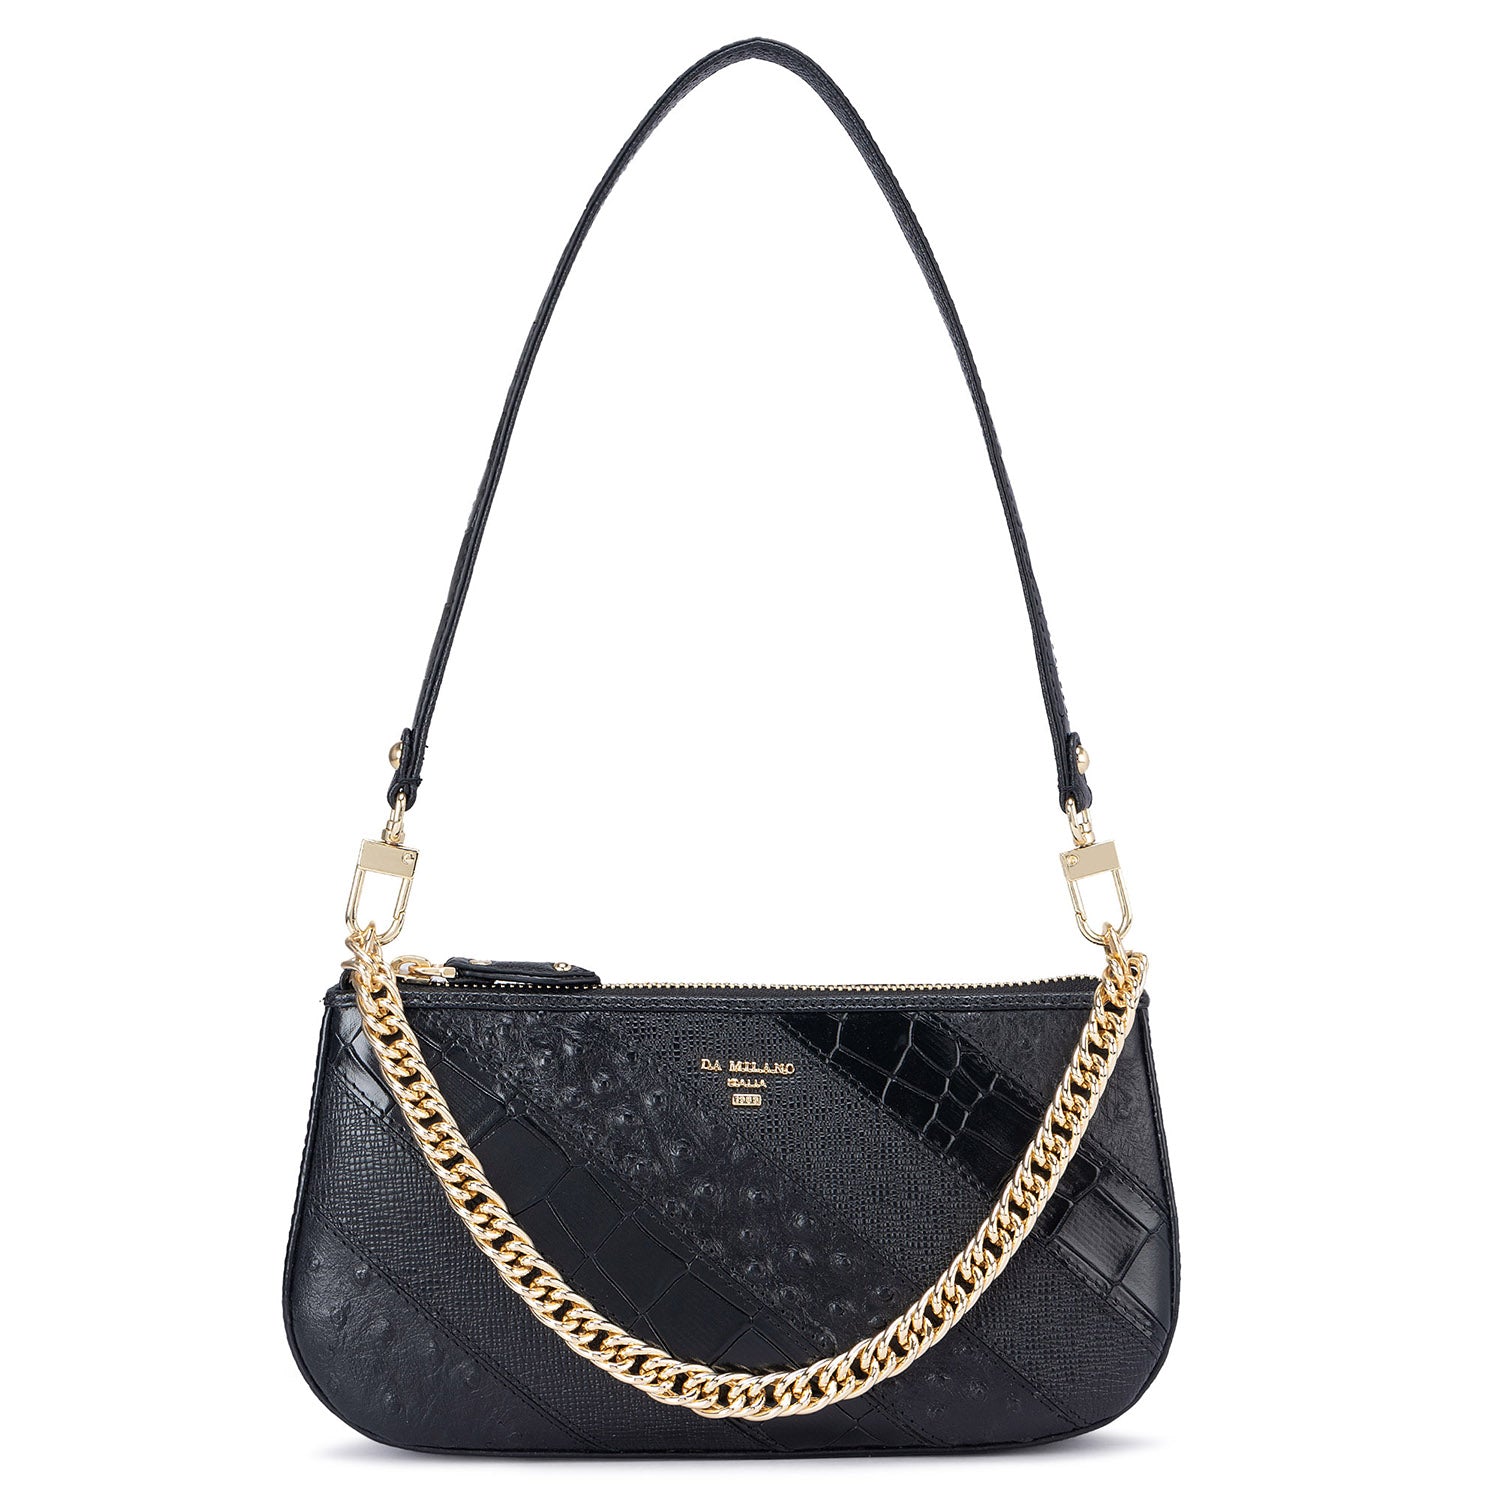 Da Milano Handbags : Buy Da Milano Black and White Leather